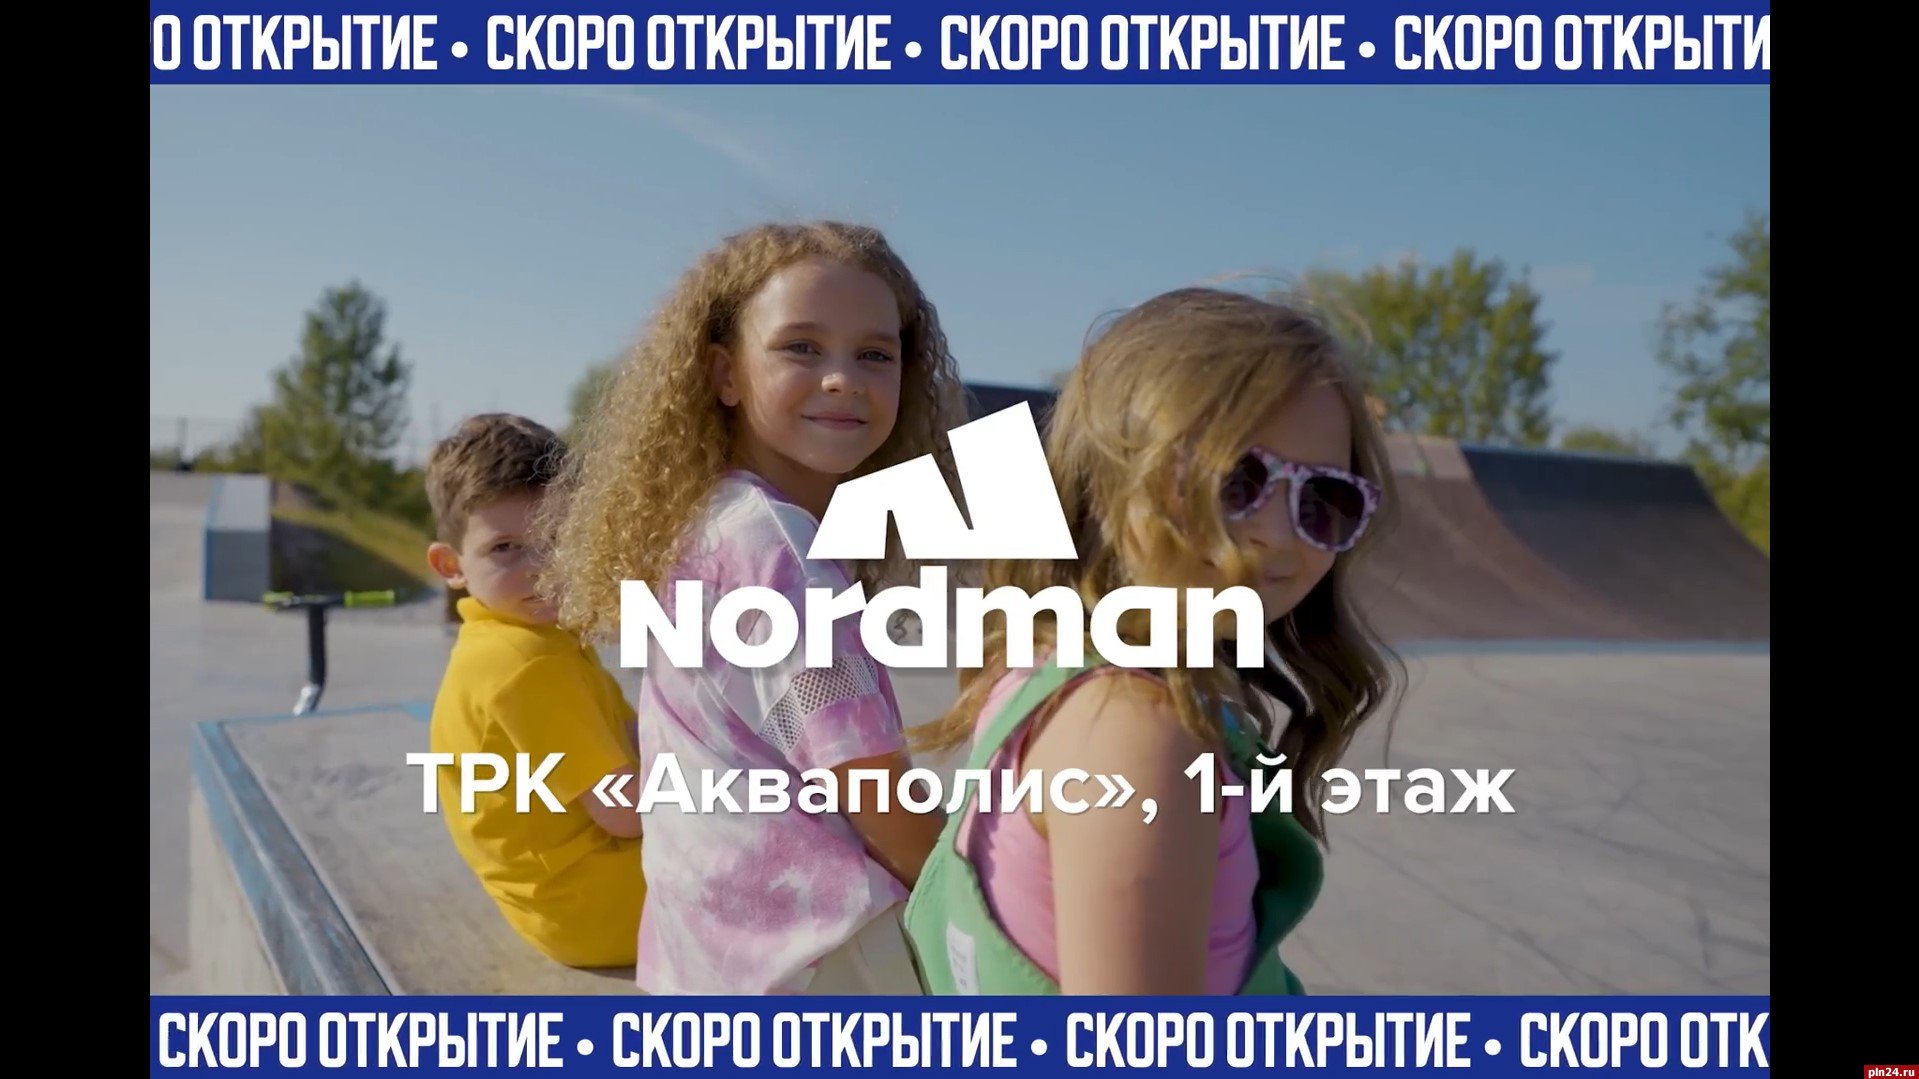 Магазин Nordman откроют псковском «Акваполисе» 4 сентября